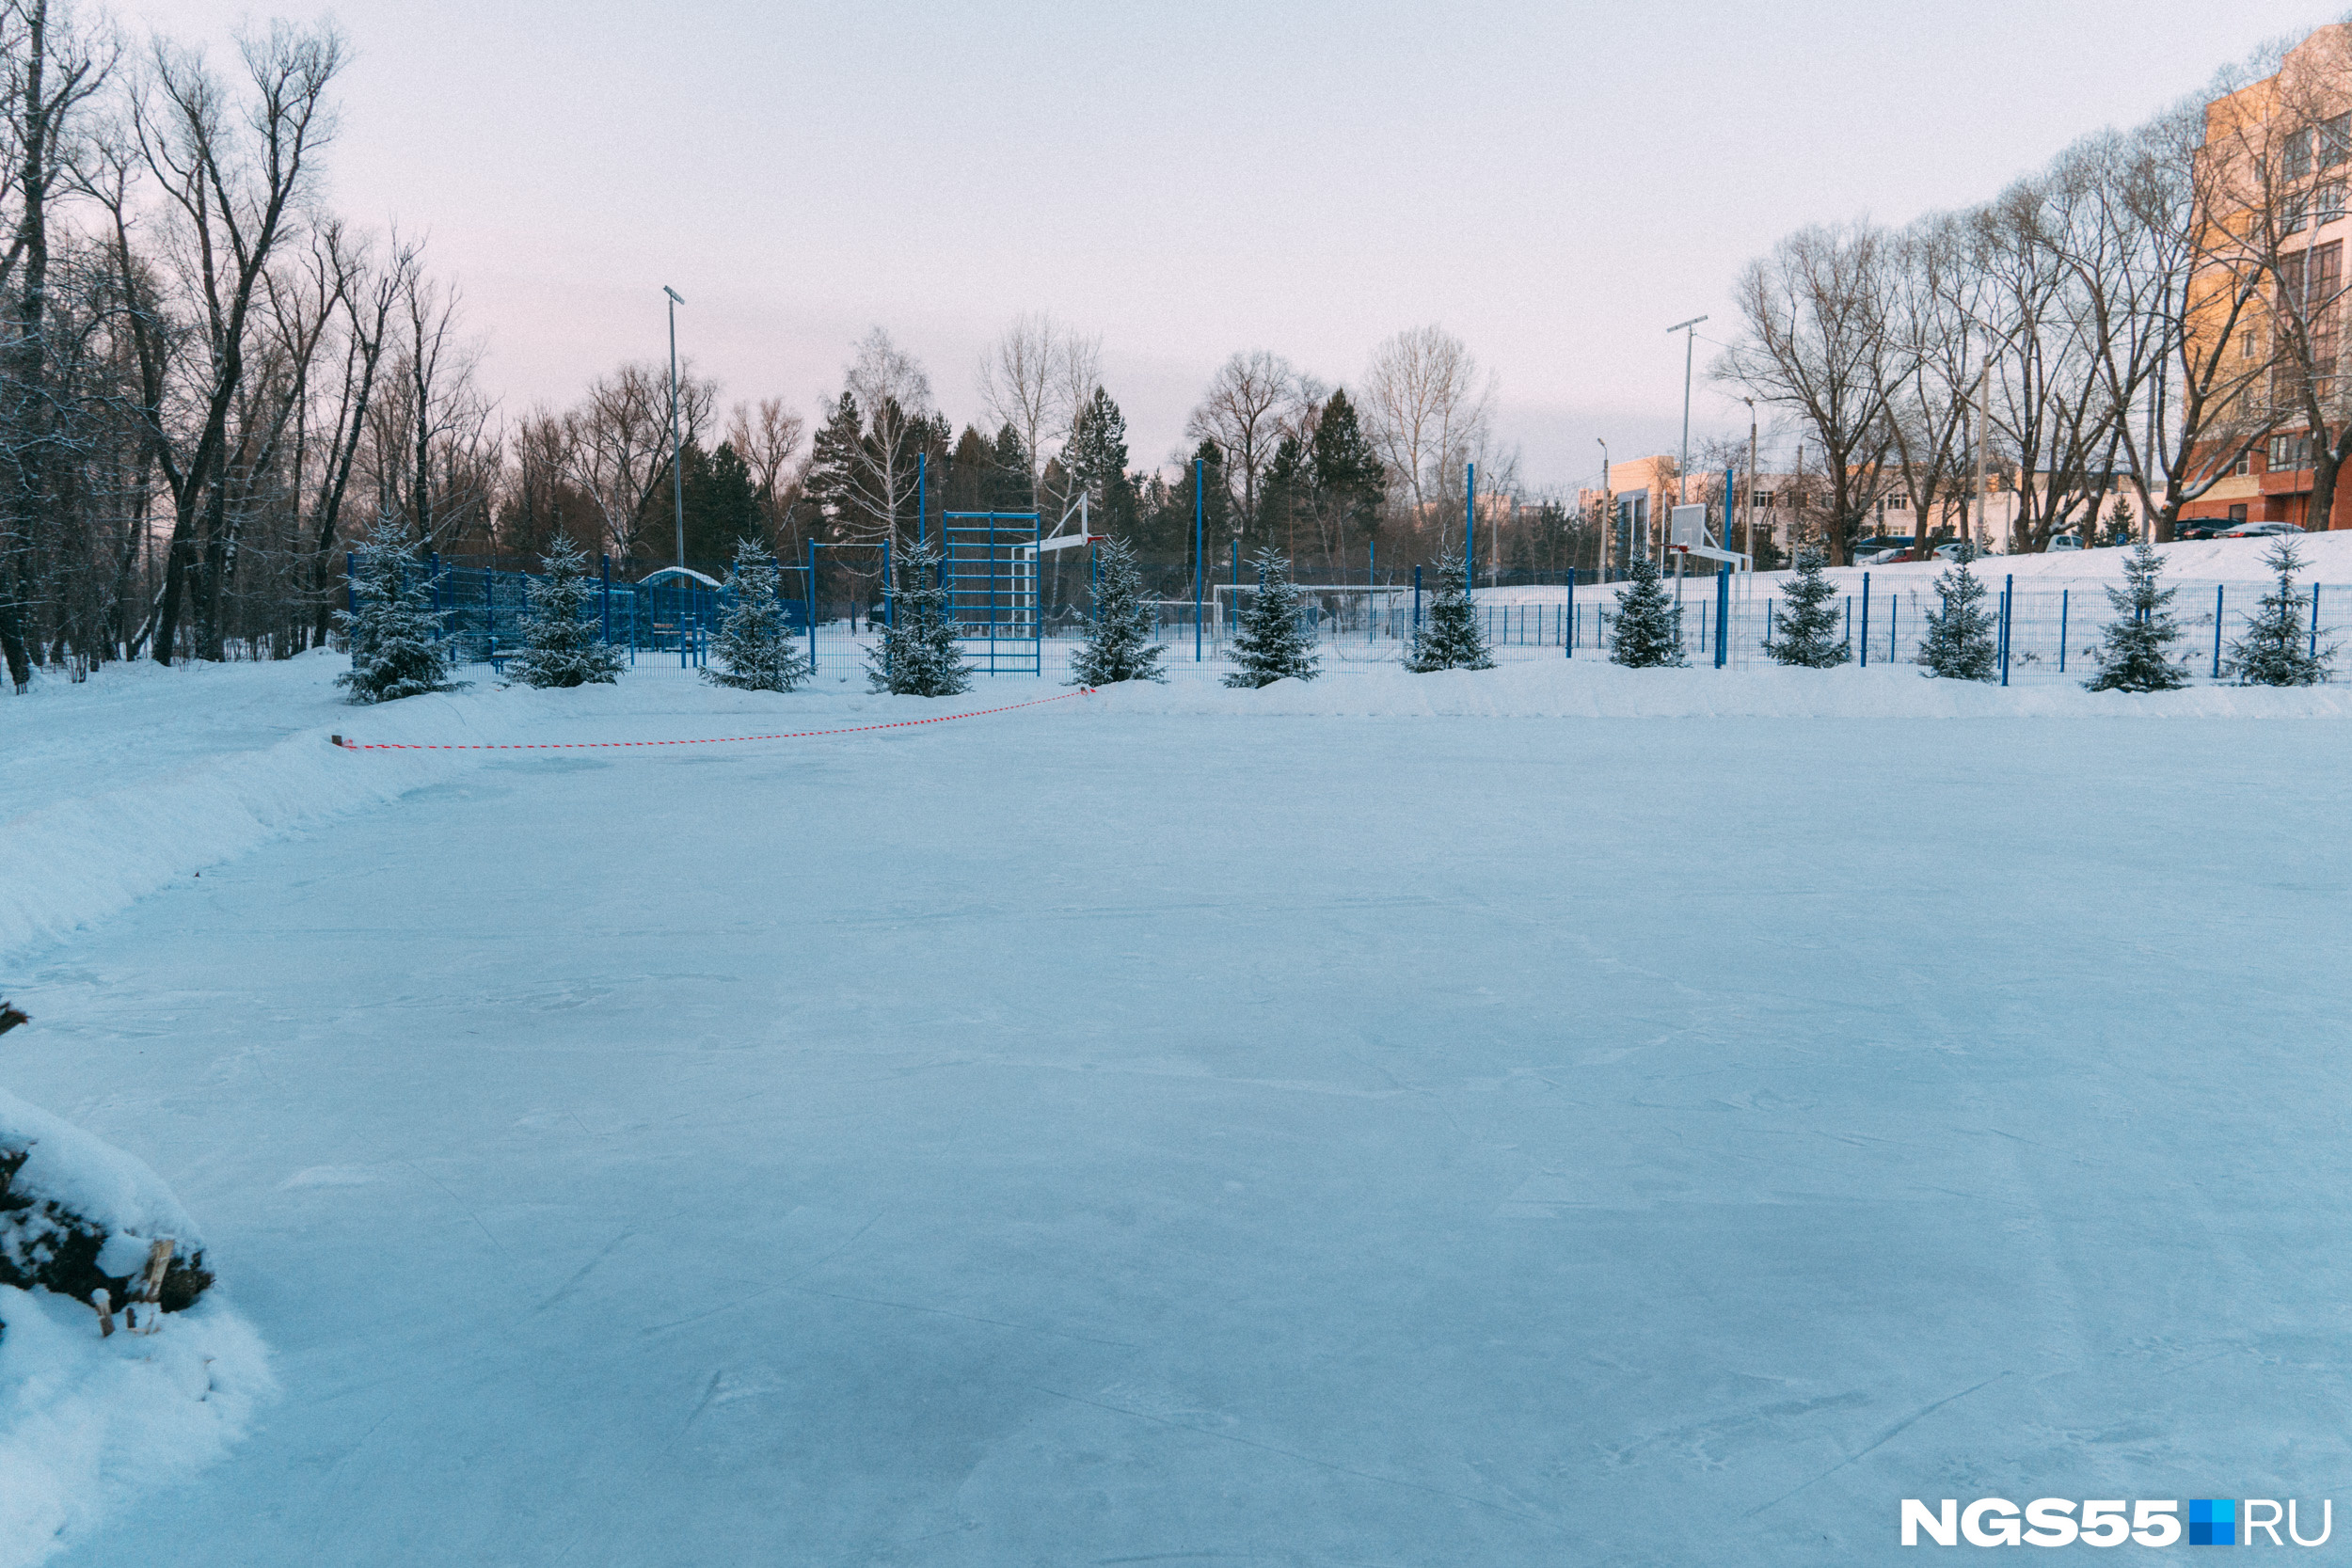 Вдали виднеется опустевшая в зимние морозы спортивная площадка